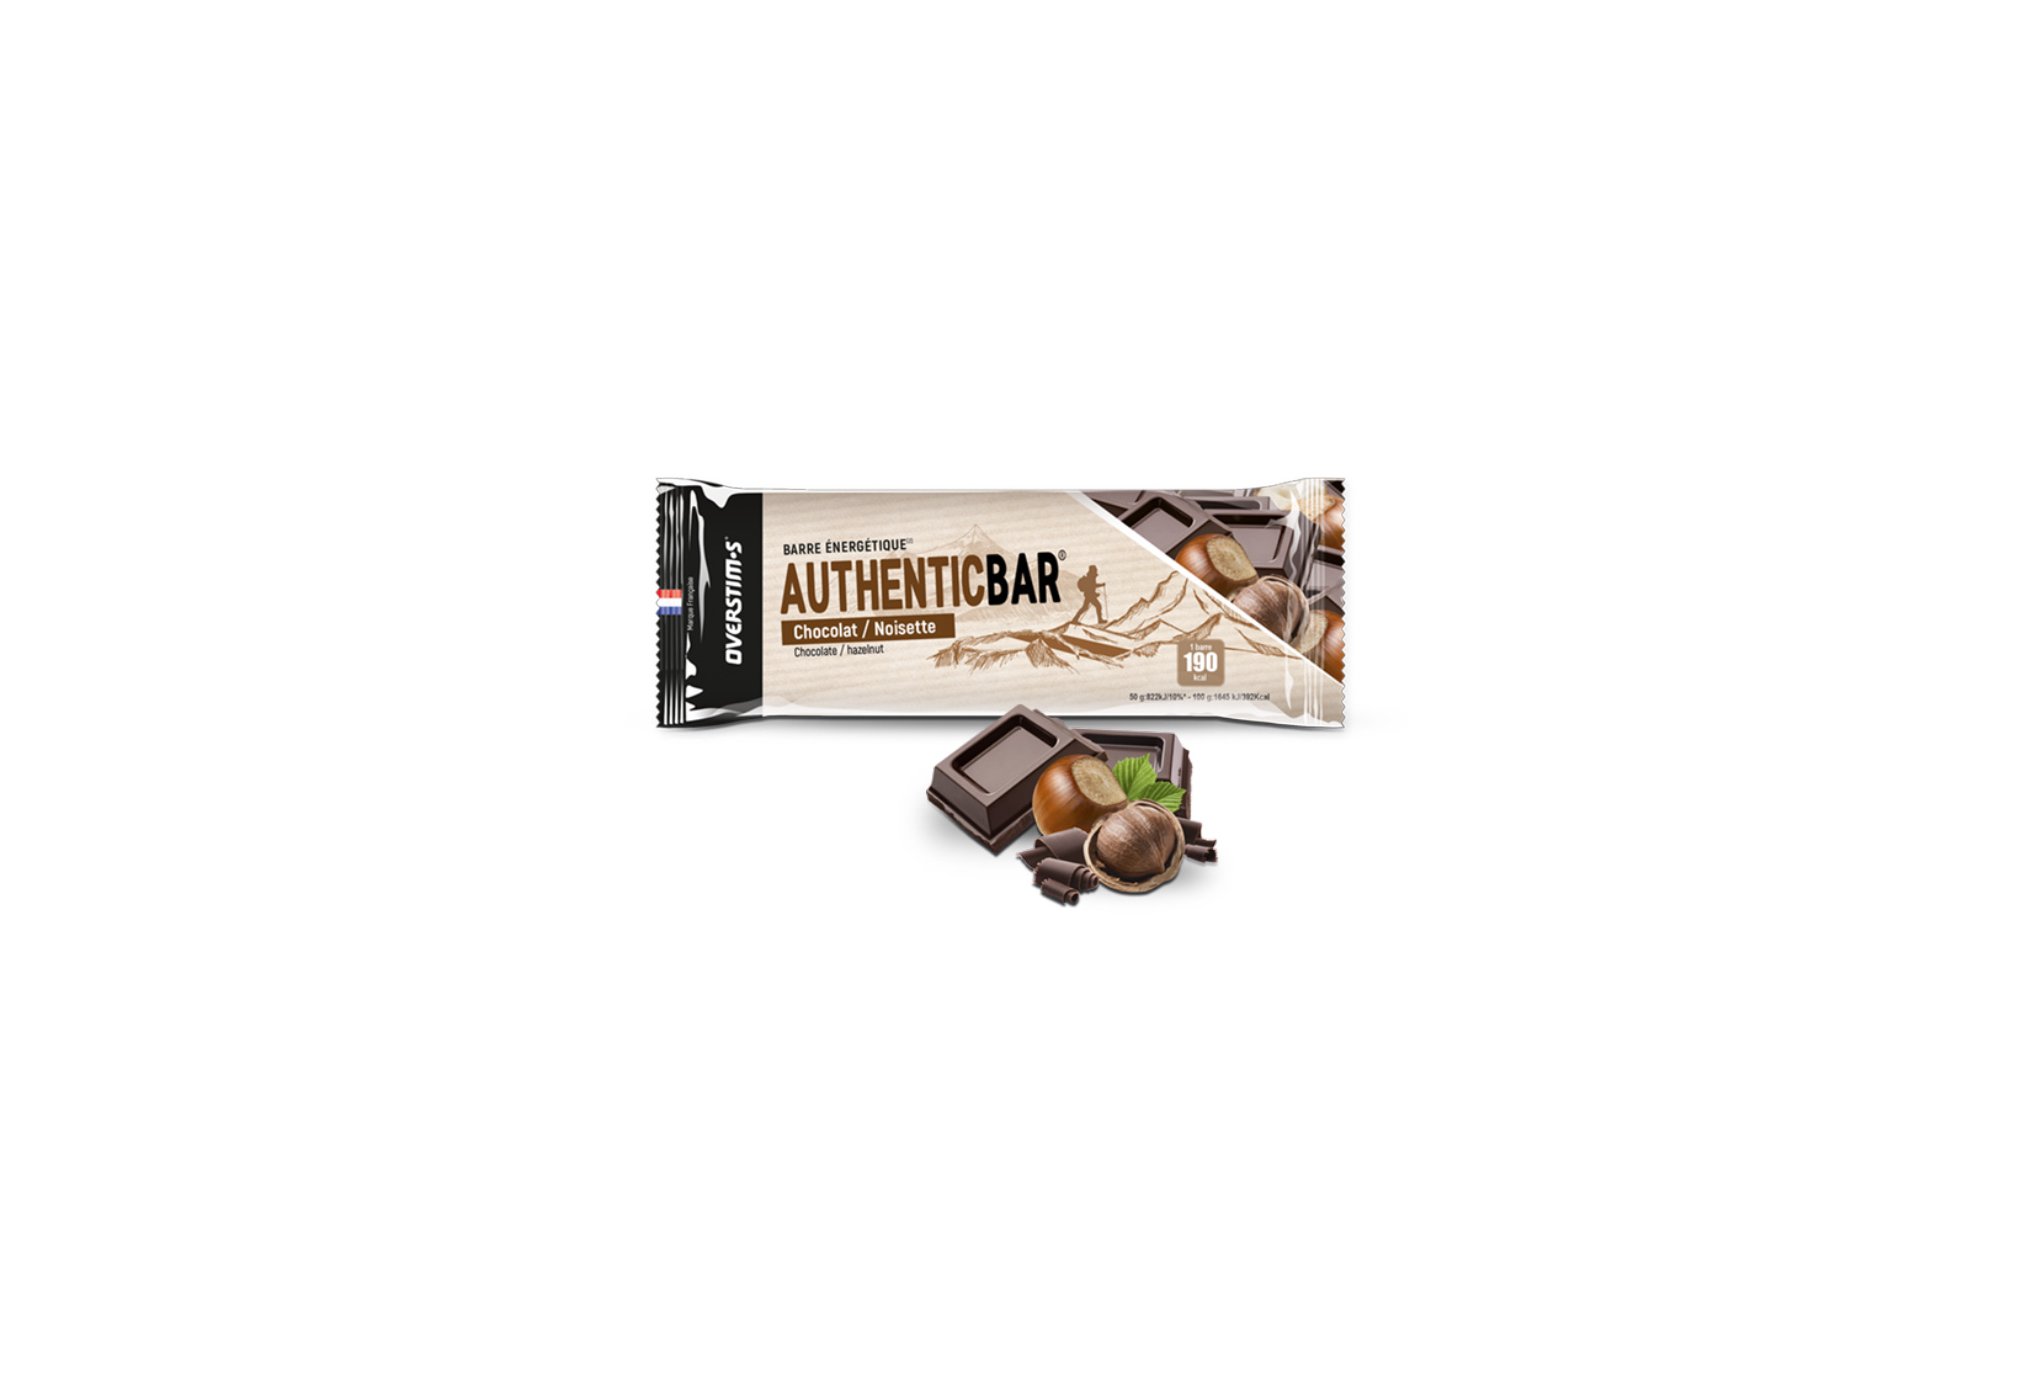 OVERSTIMS Authentic Bar - Chocolat/noisette Diététique Barres